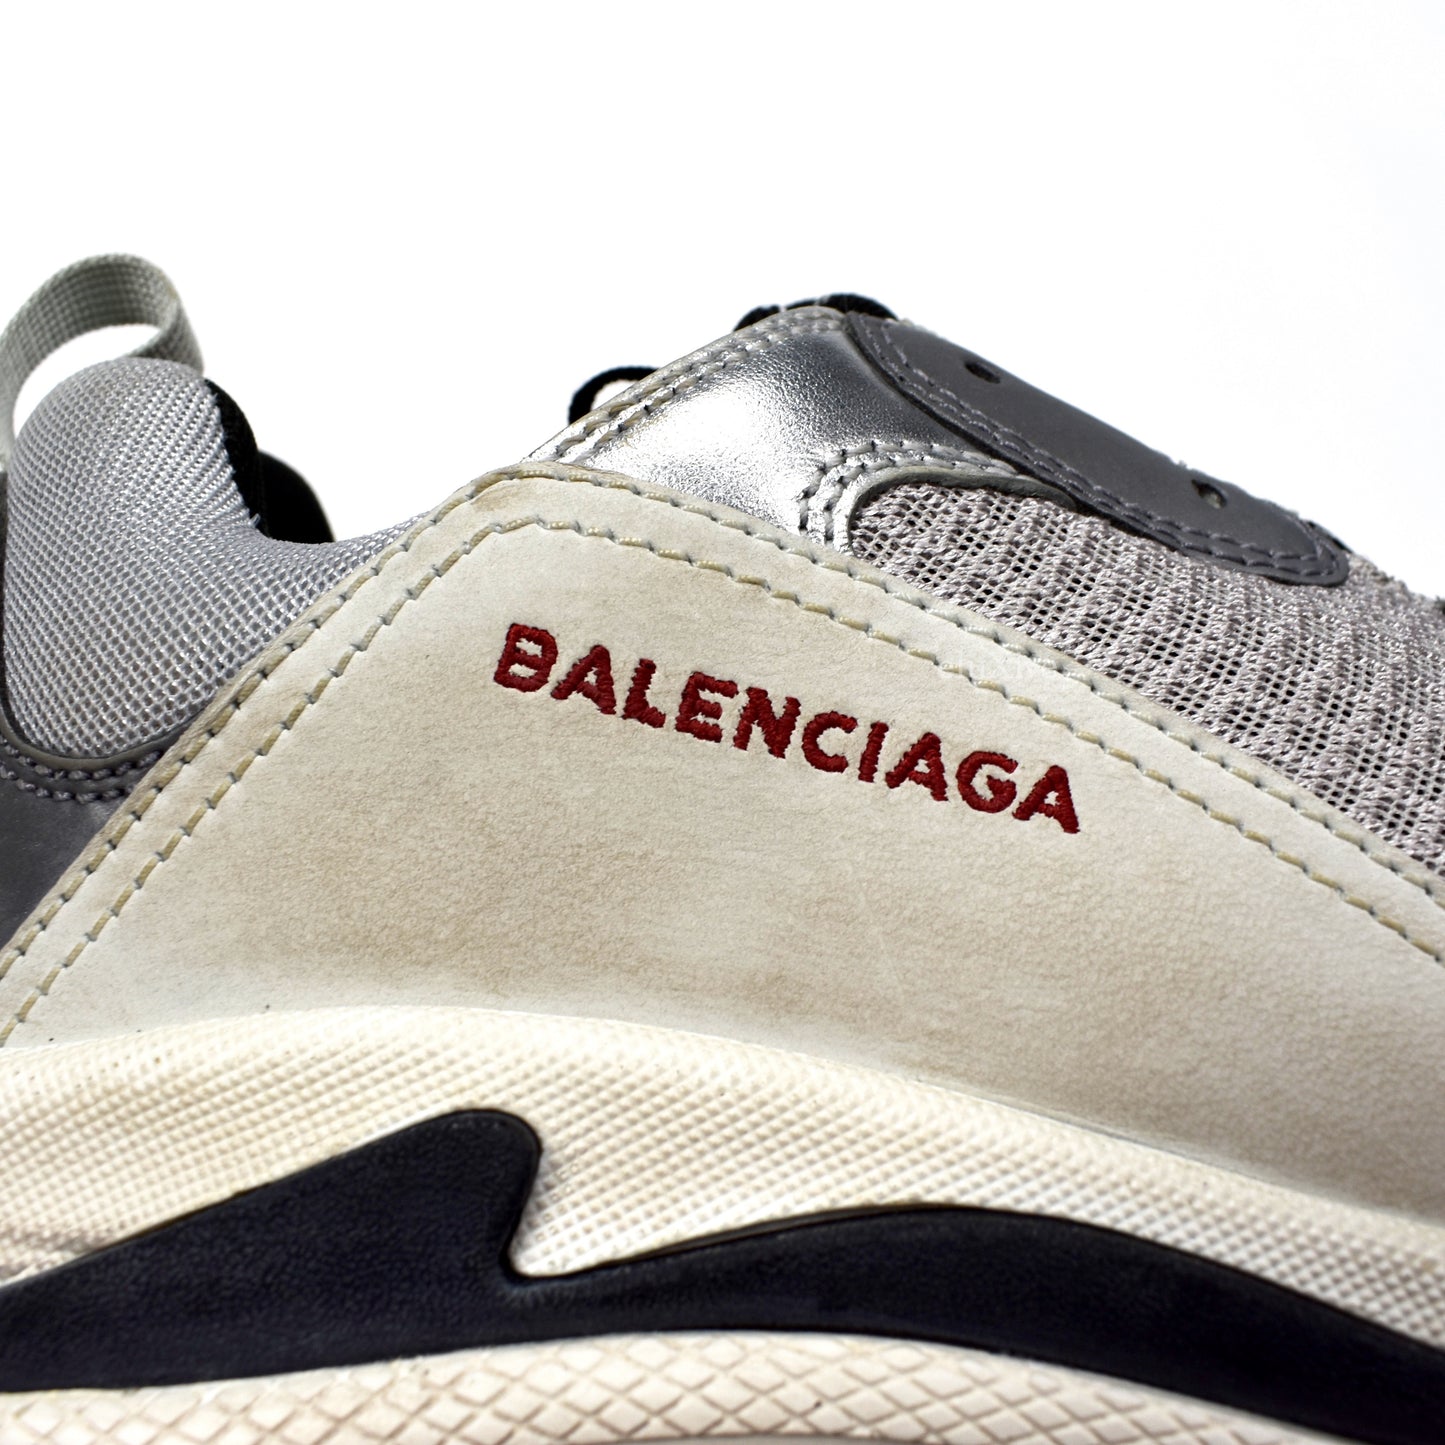 Balenciaga - Triple S Trainer (Silver/Red)